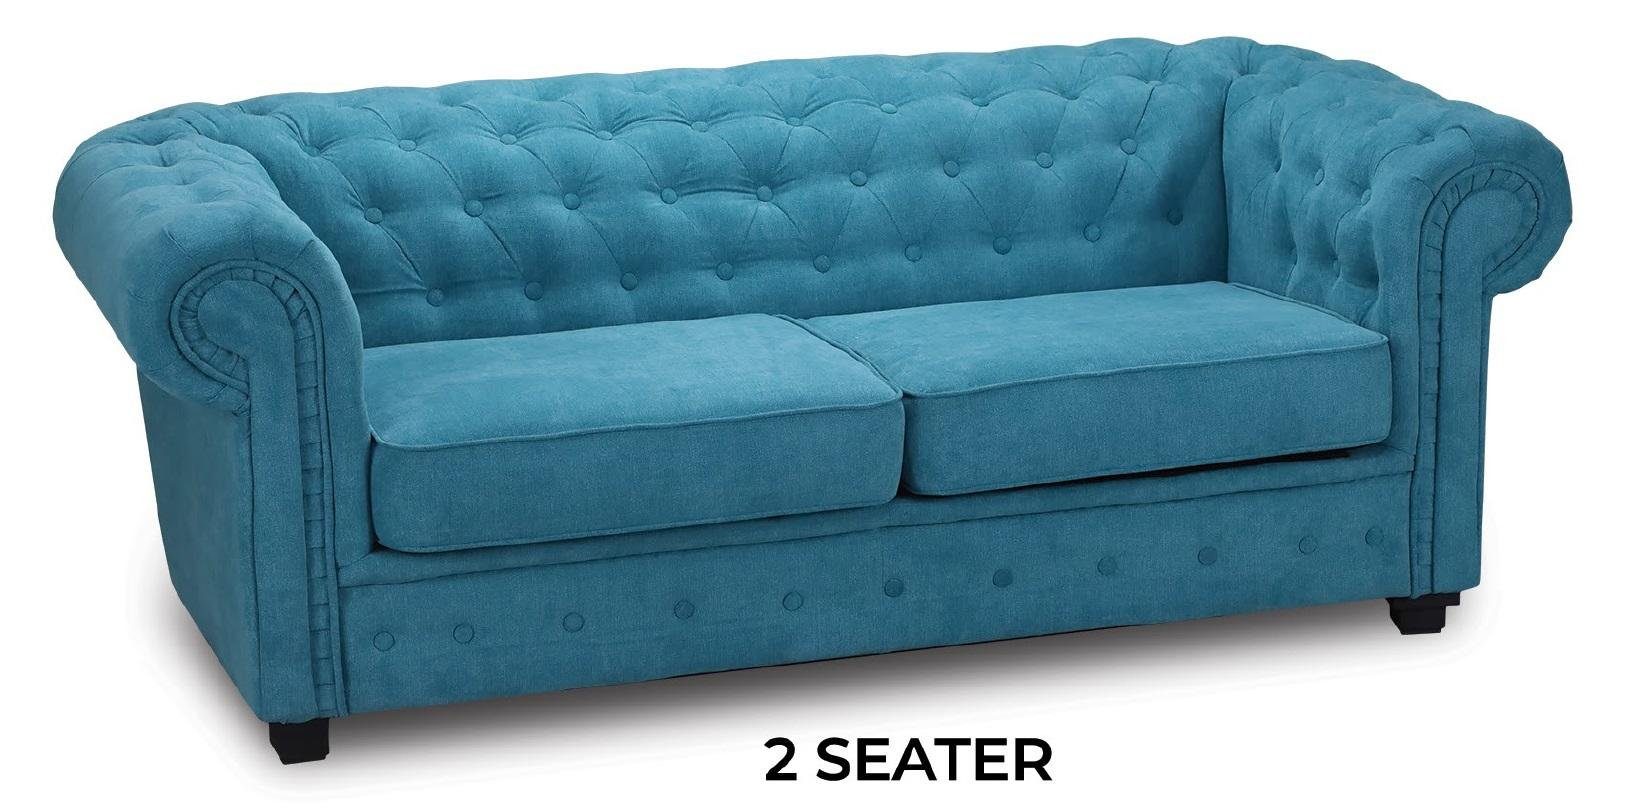 JVmoebel Sofa Luxus Zweisitzer Türkis Couch Polstermöbel Stoff Sofa Neu, Made in Europe